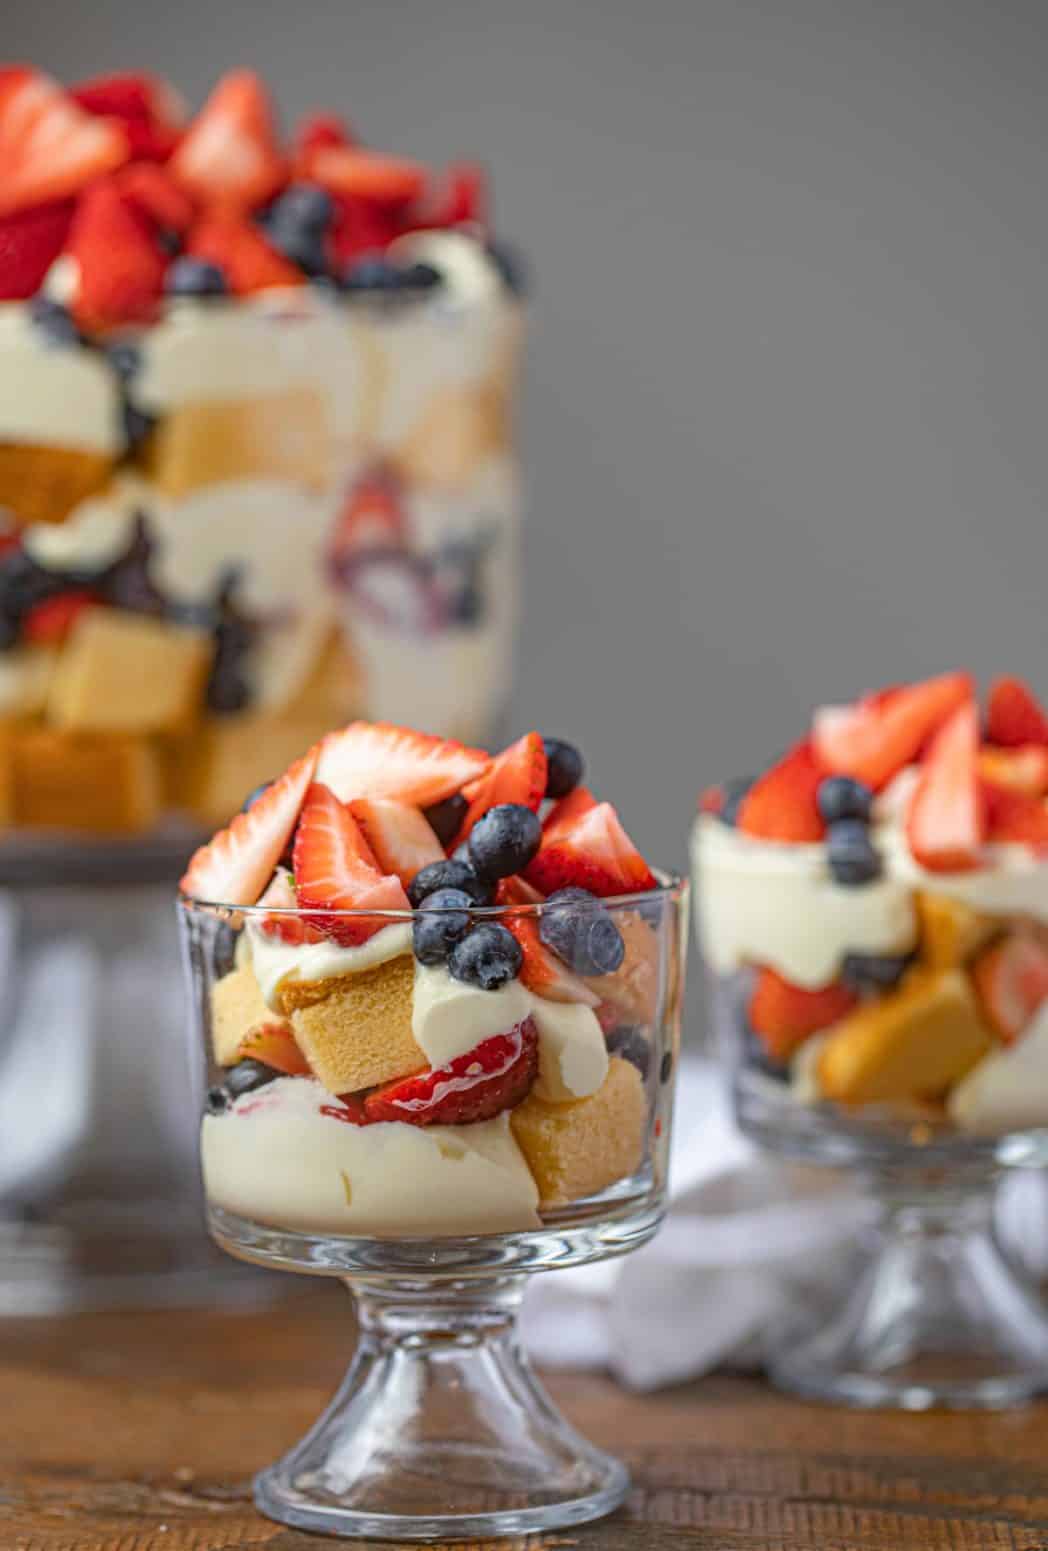 Mixed Berry Trifle (Better than Rachel Green's!) - Dinner, then Dessert